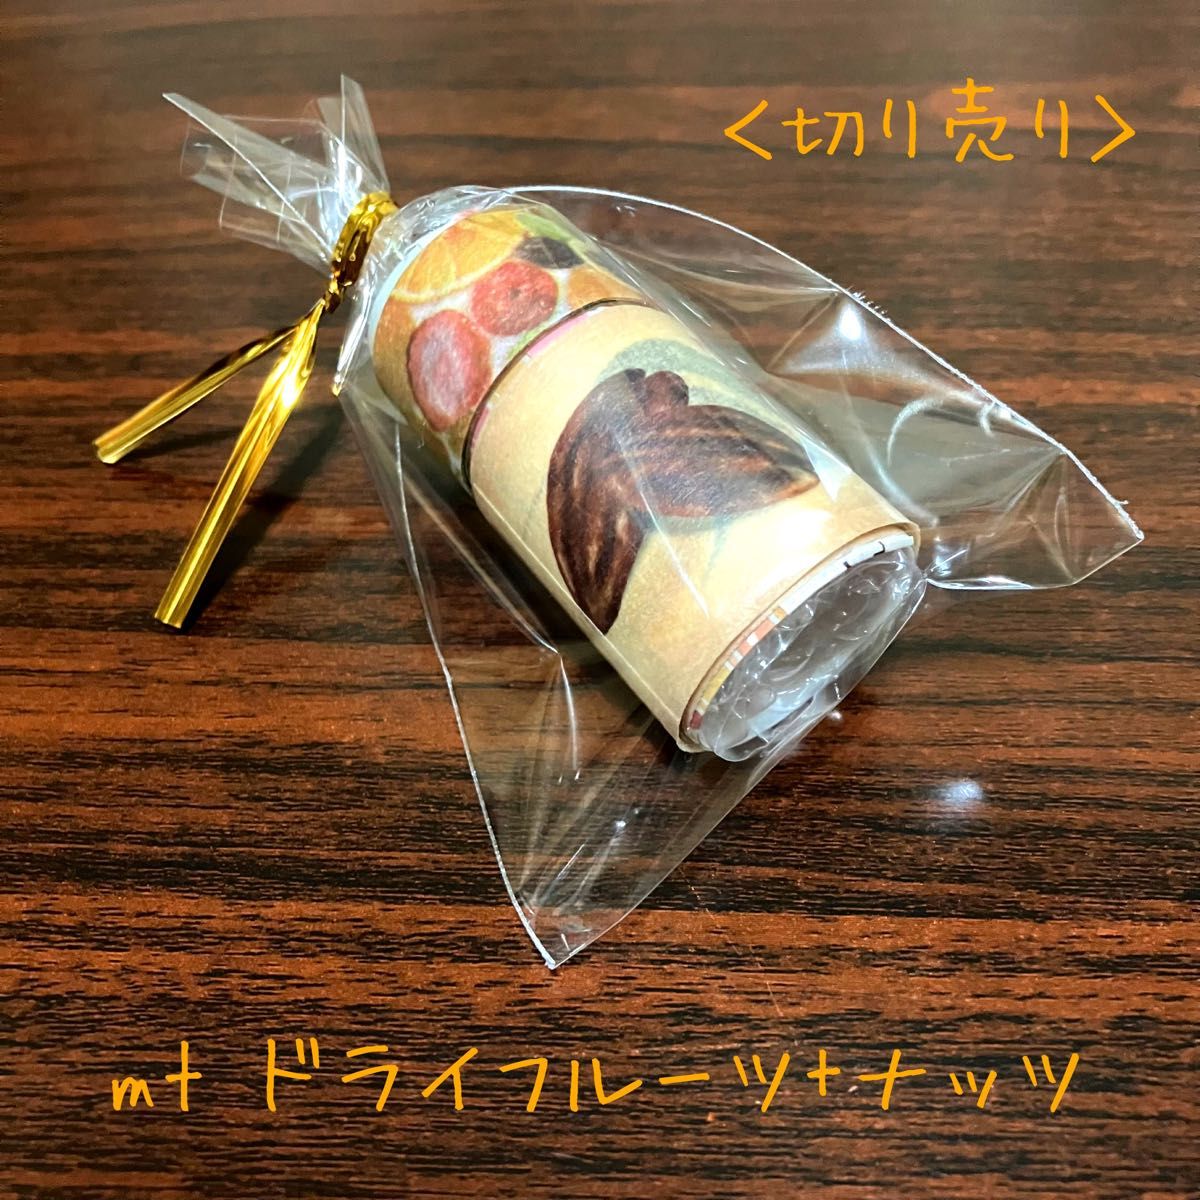 【切り売り】mt ドライフルーツ+ナッツマスキングテープ 各1m×2種